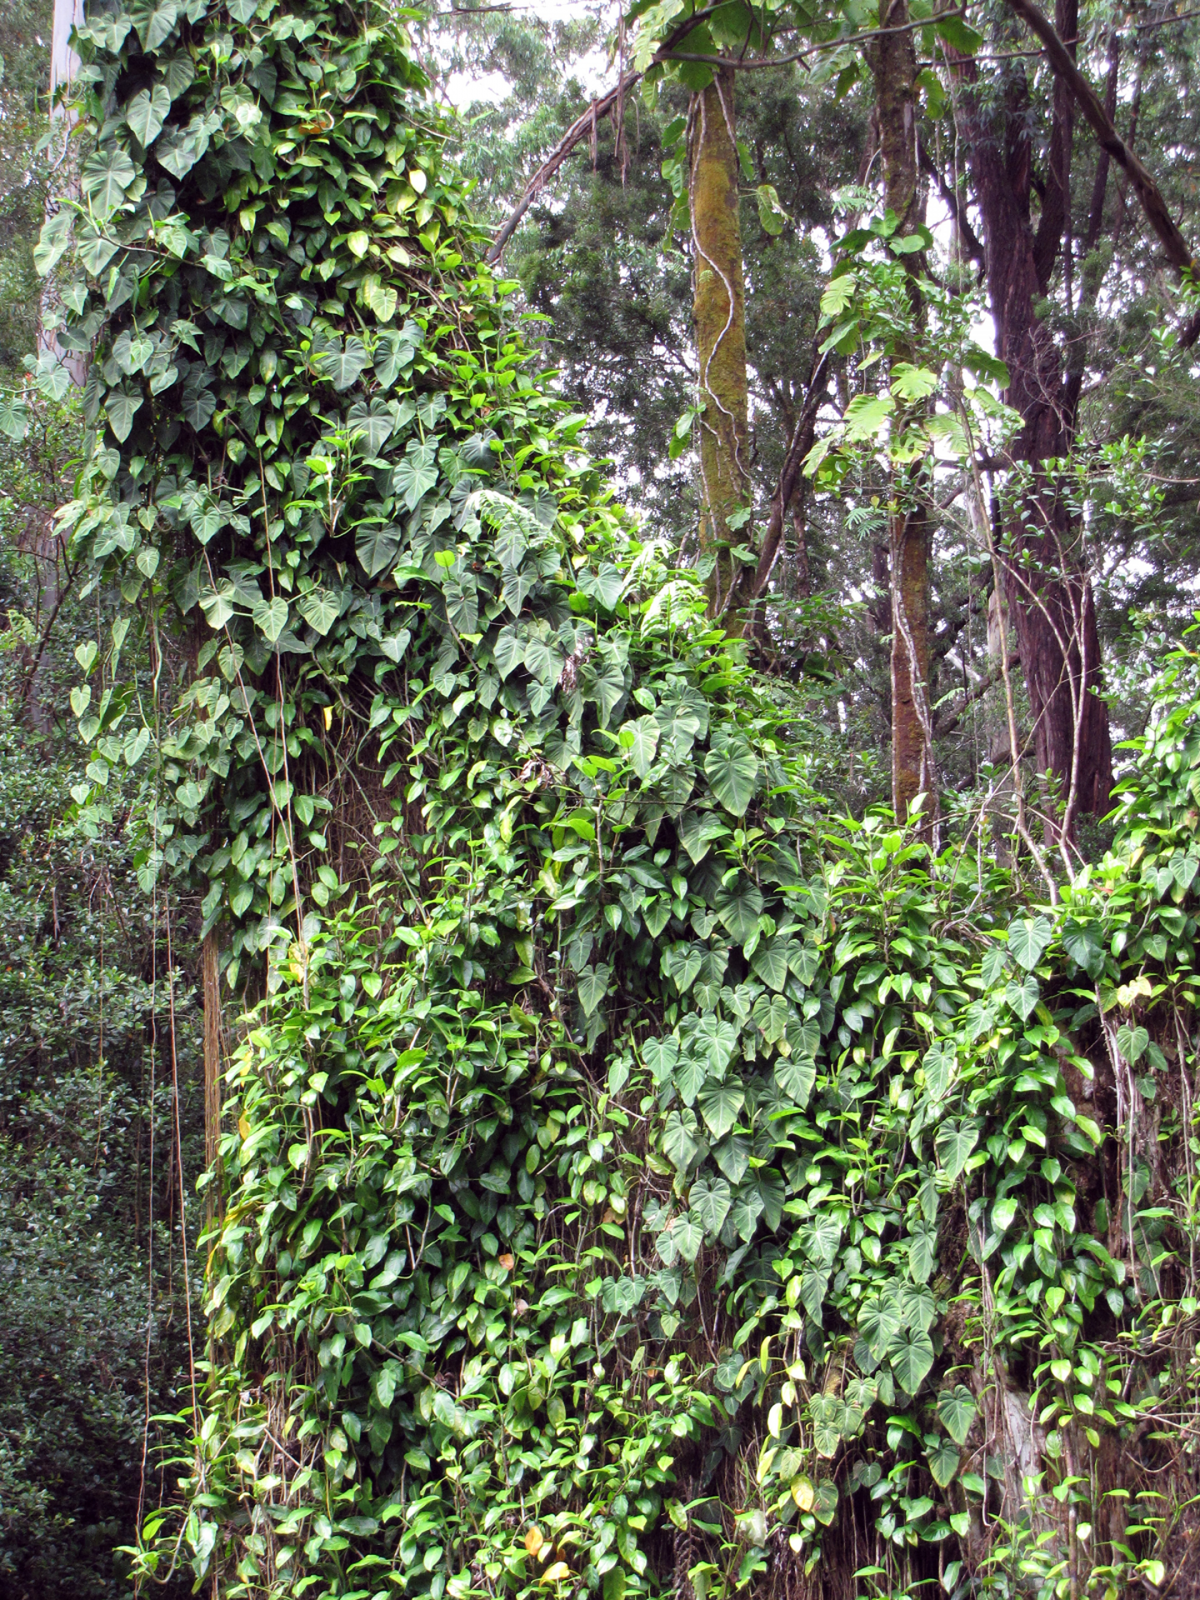 Fotografia przedstawia podstawę szarego pnia drzewa. Jest gęsto obrośnięty pędami filodendrona. Filodendron ma owalne liście. Jego pęd jest mocno rozgałęziony i ściśle oplata pień drzewa.